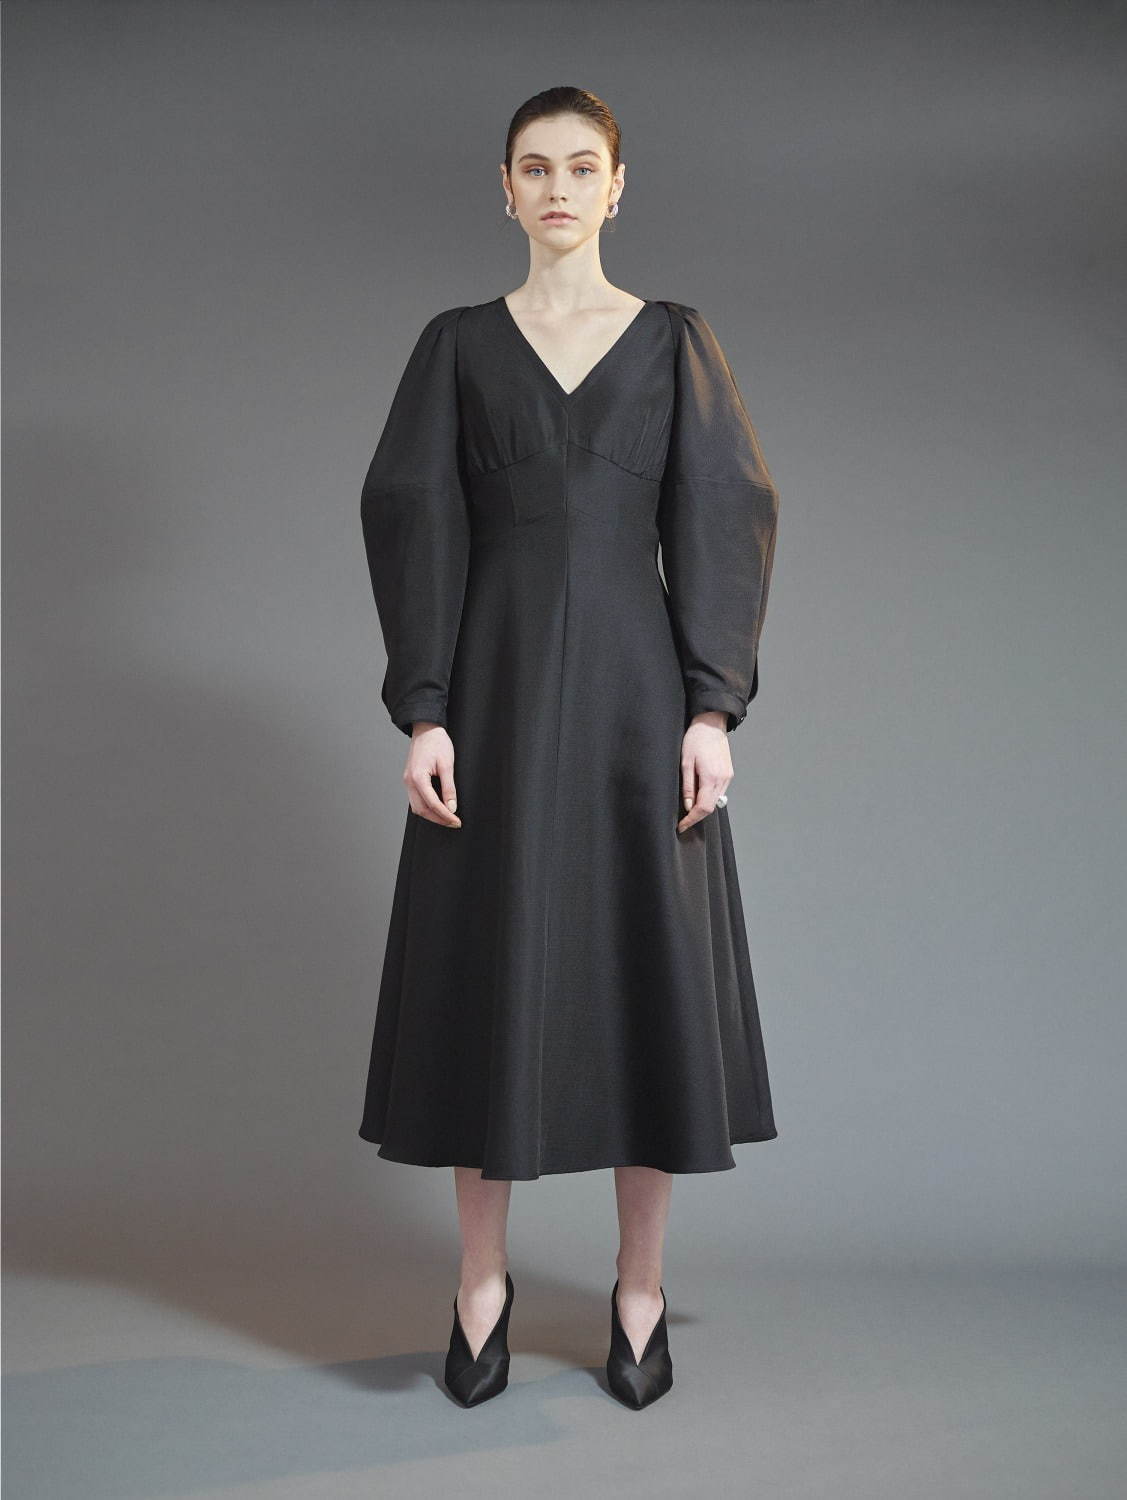 ヨウヘイ オオノ ドレスライン(YOHEI OHNO Dress Line) 2020-21年秋冬ウィメンズコレクション  - 写真2